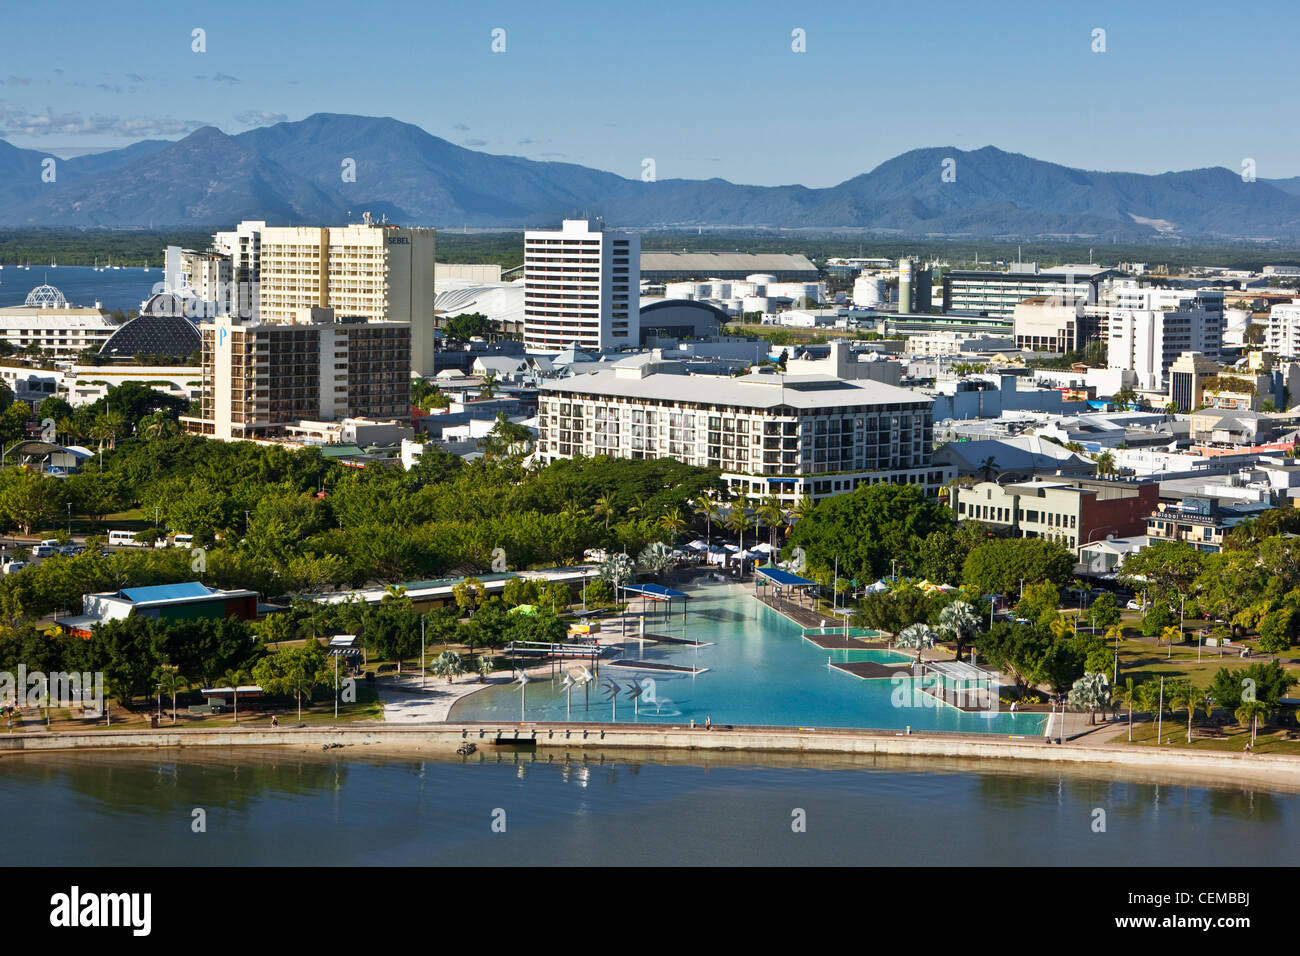 Vue aérienne de l'Esplanade lagoon et toits de la ville. Cairns, Queensland, Australie Banque D'Images